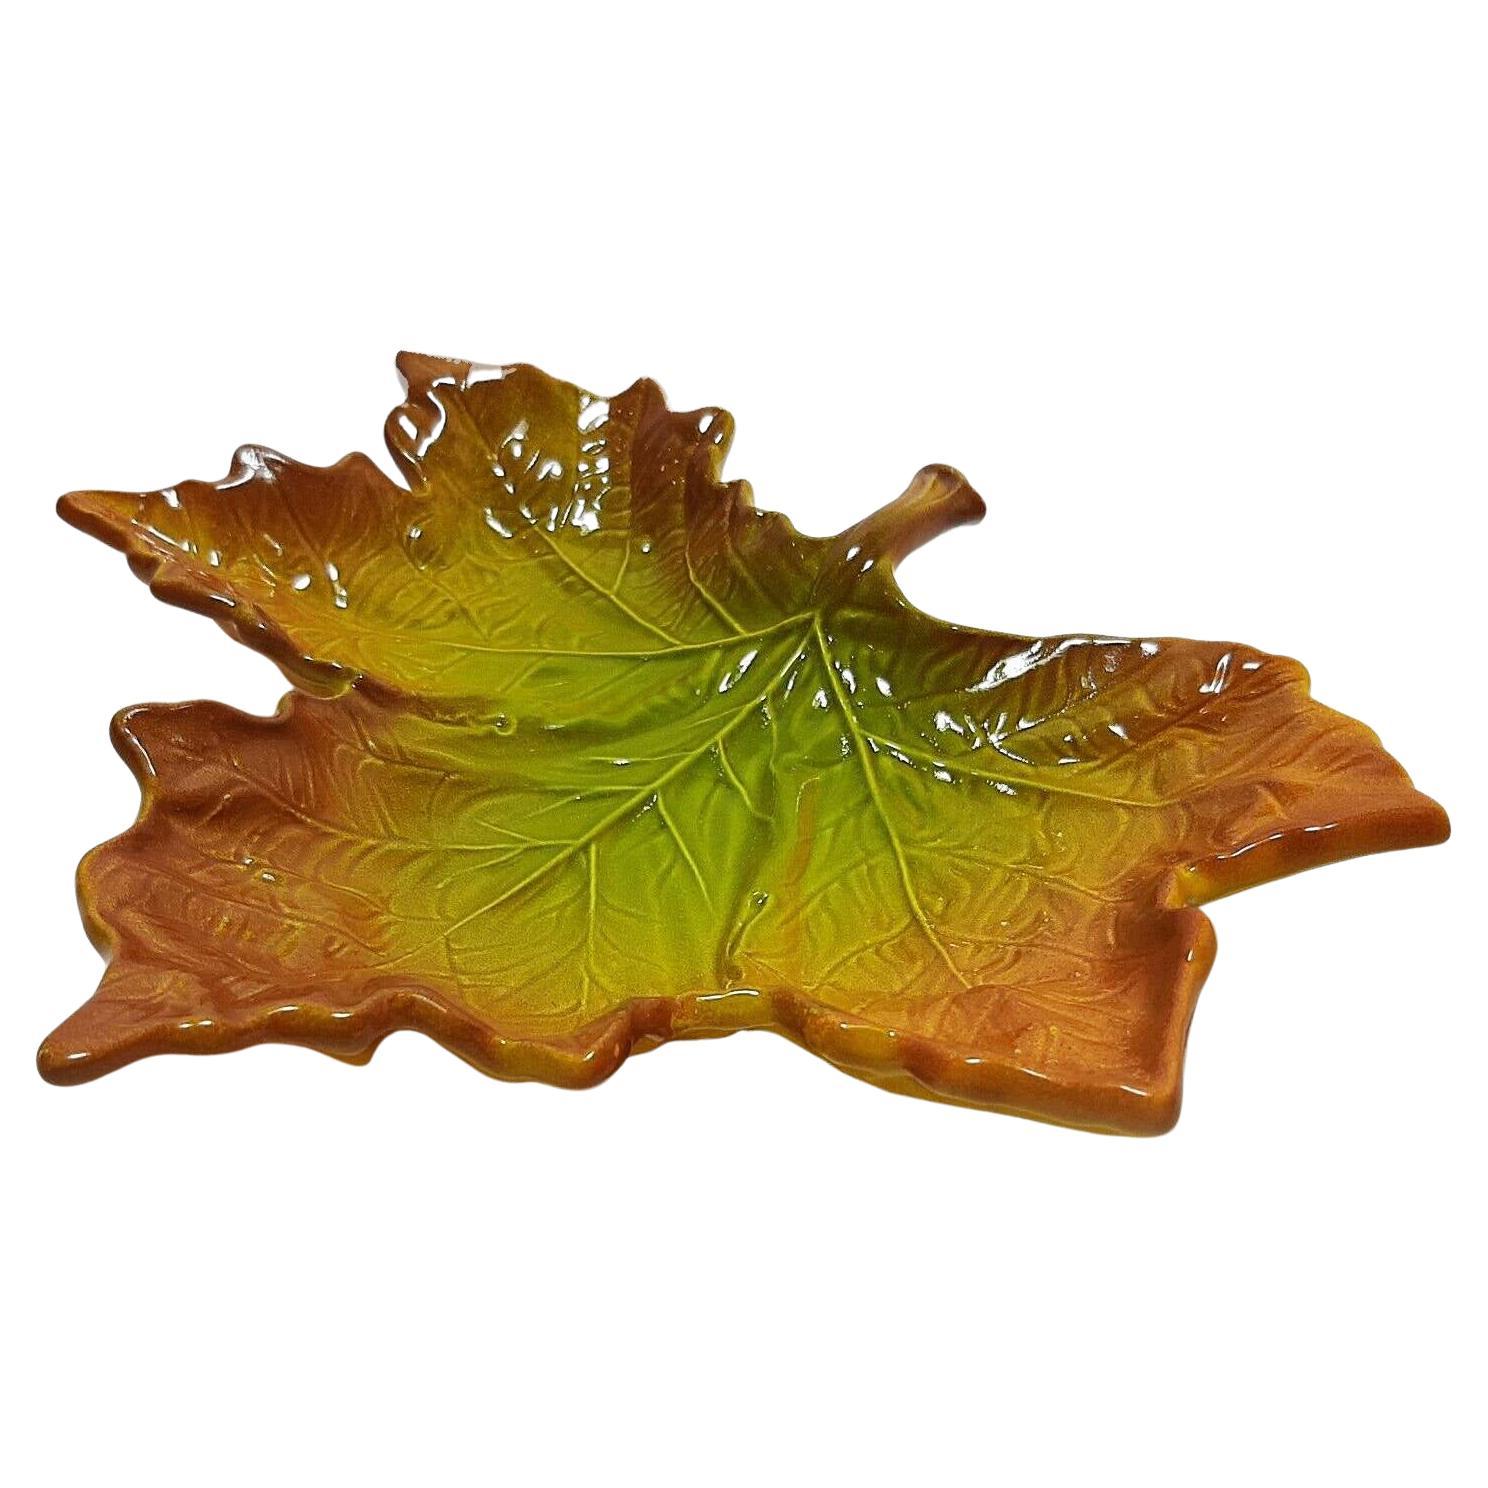 Seltene dekorative Schale aus Keramik von Christian Dior in Form eines Herbstblattes. Dieses Stück ist sehr schön gearbeitet und stellt eine wunderbare Ergänzung für jede Sammlung von Wohnaccessoires dar.

Zustand: 1980er Jahre, sehr gut